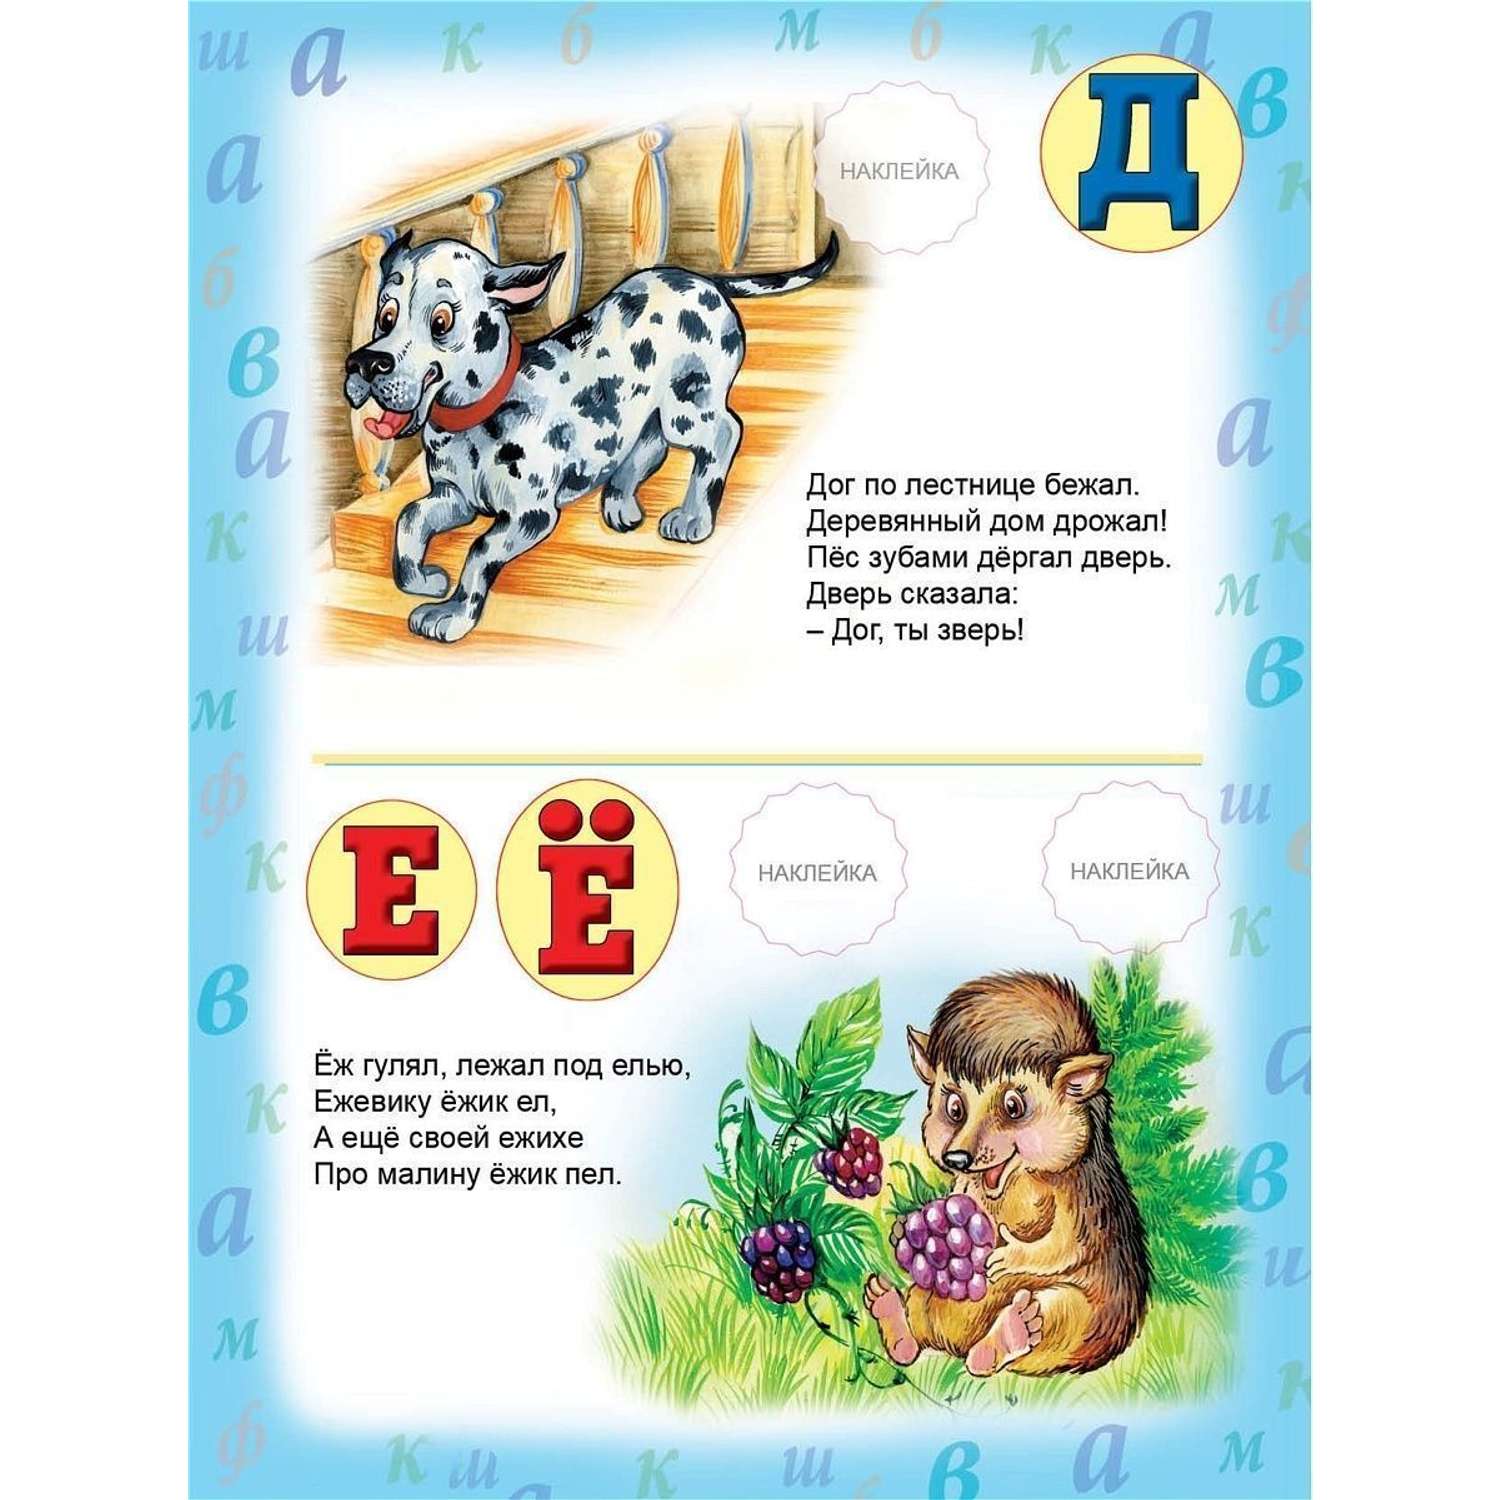 Книга Алтей Азбука для детей с наклейками набор 2 шт. - фото 7